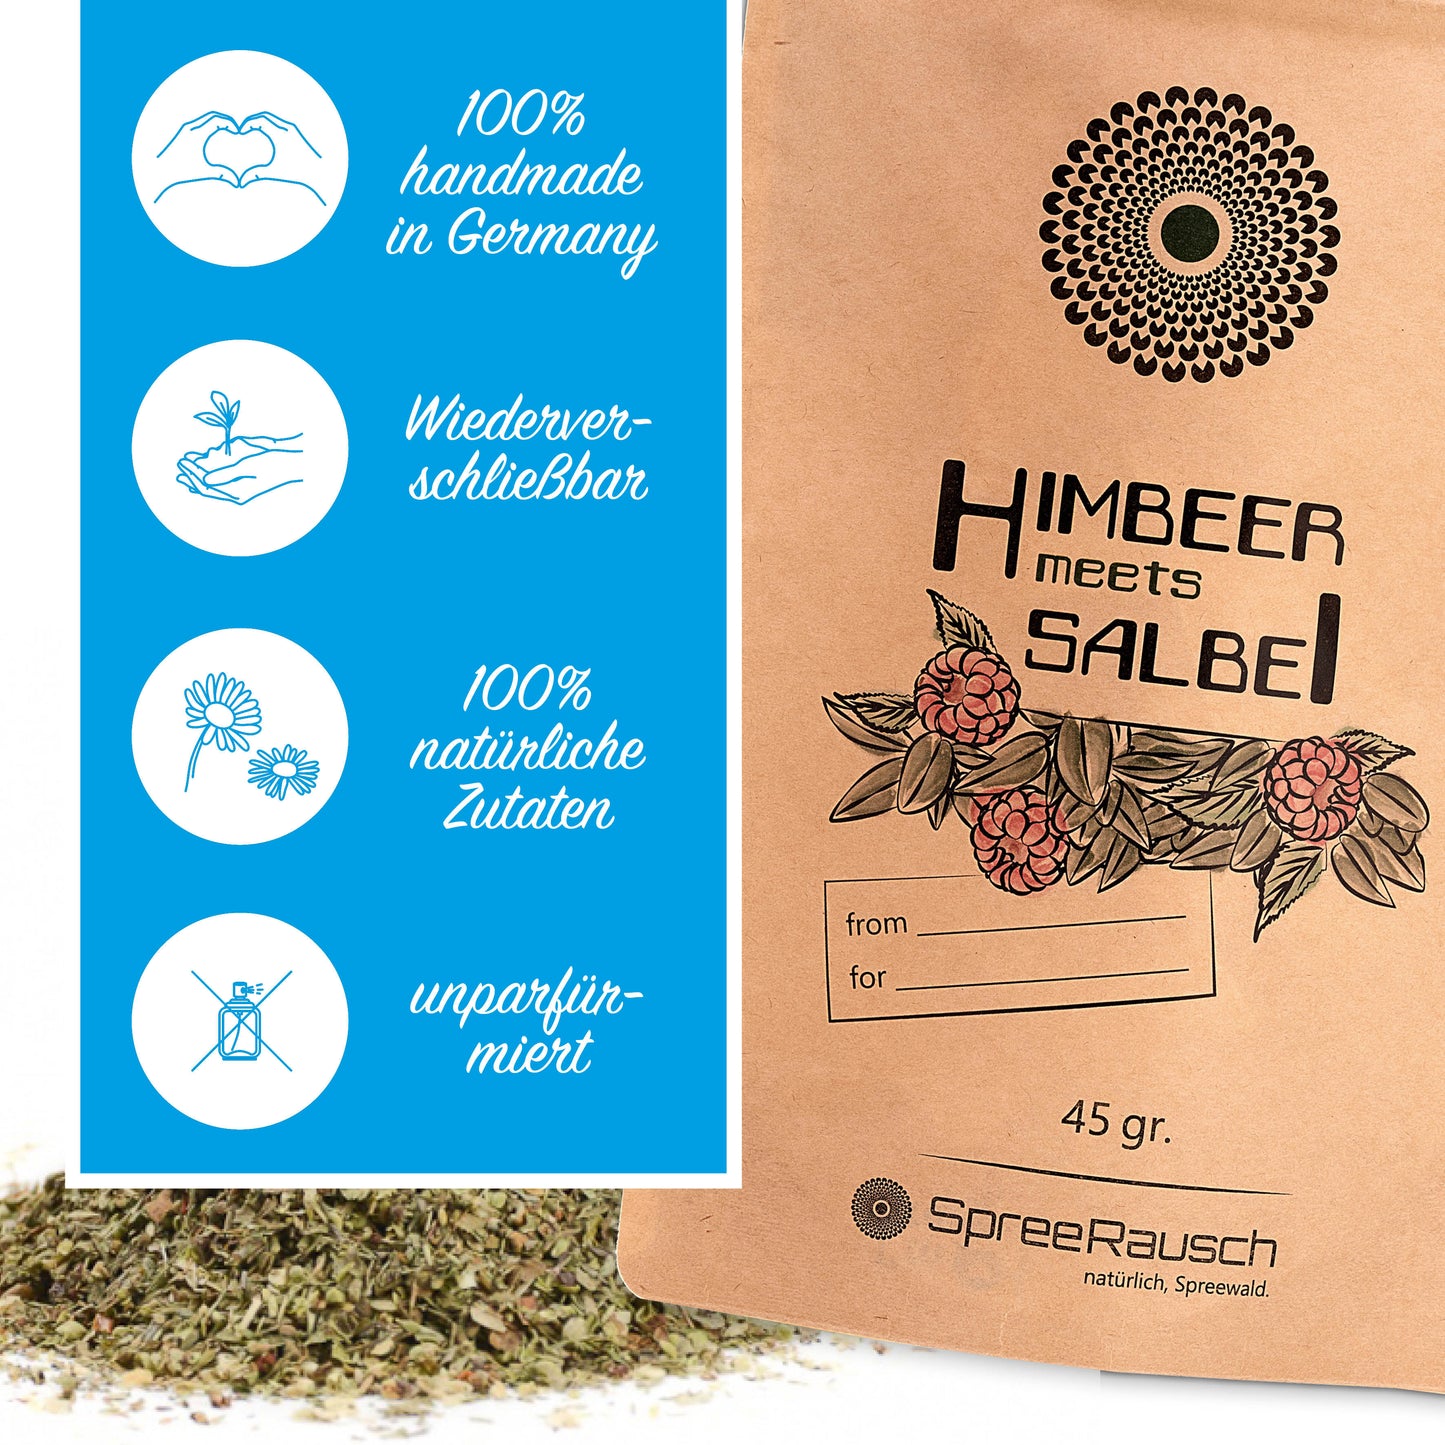 Himbeer - Salbei Teemischung von SpreeRausch, Die ORIGINAL Kräutermischung für viele Verwendungsmöglichkeiten